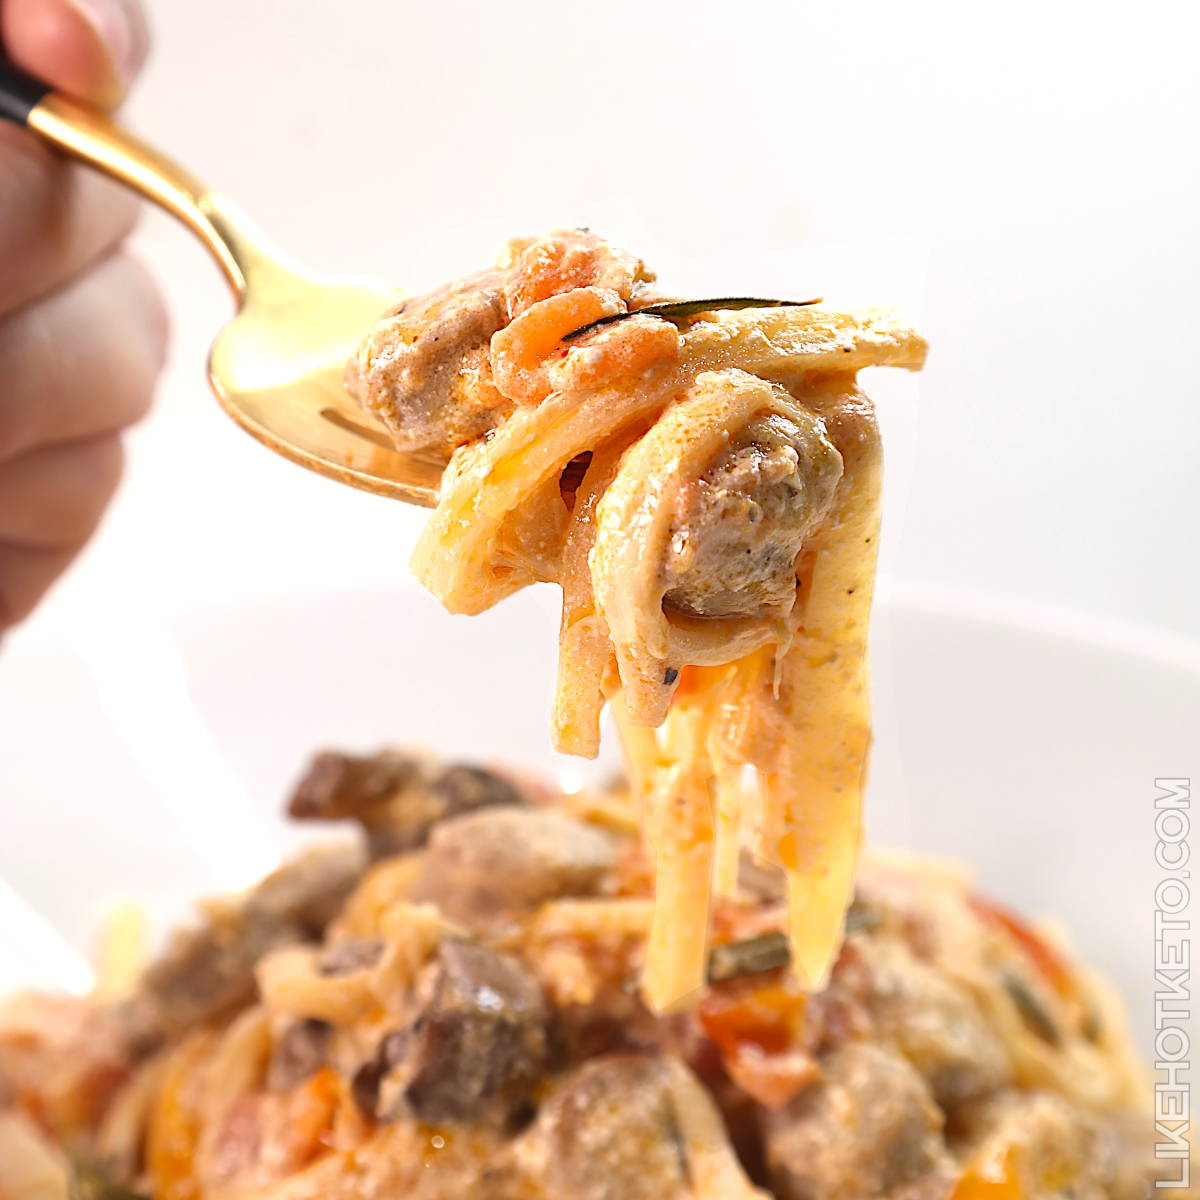 Keto baked feta Palmini pasta twirled around a fork.